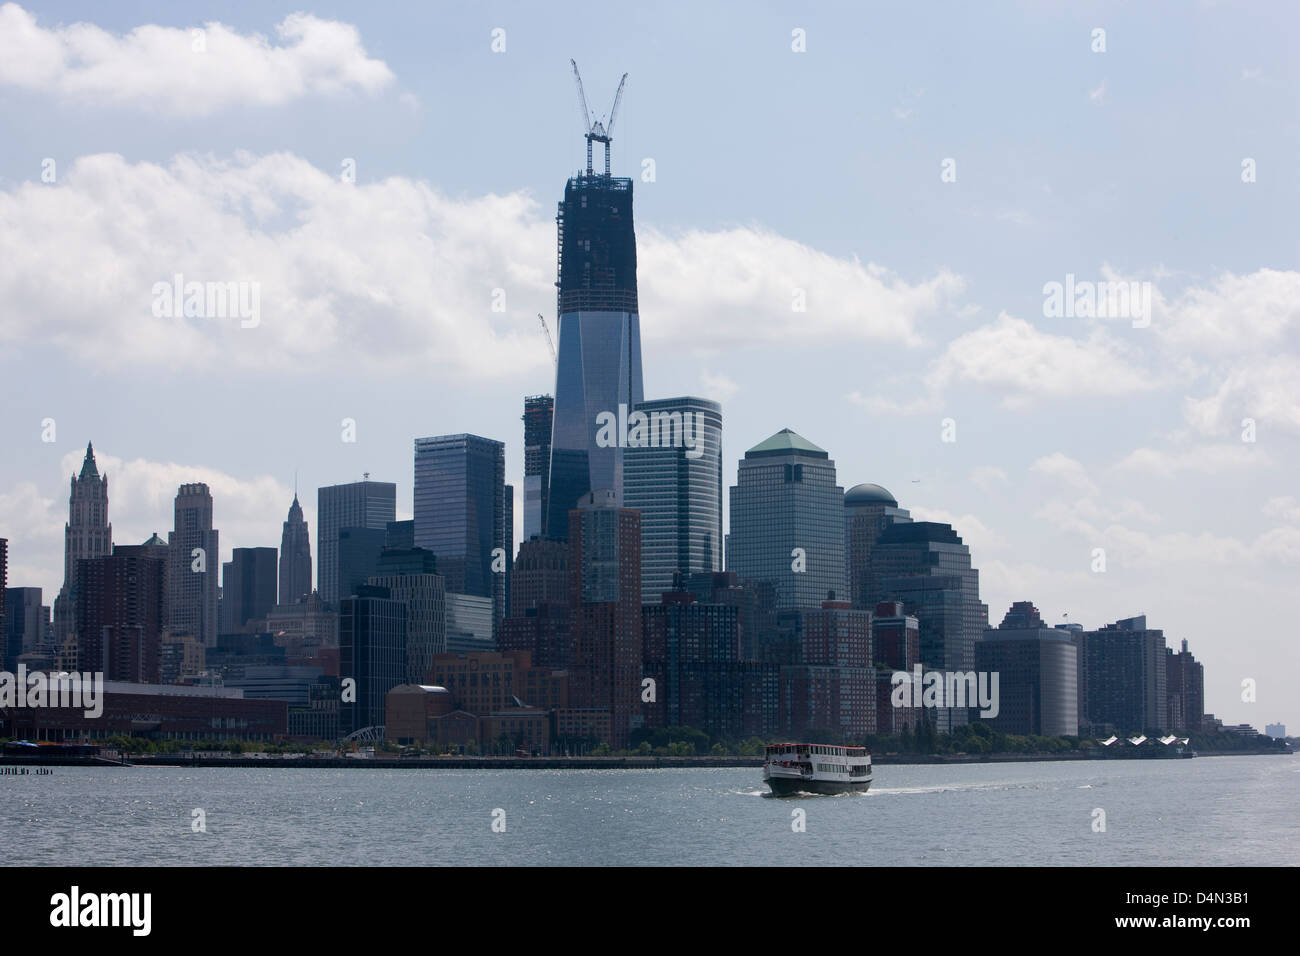 Il World Trade Center building o Freedom Tower in costruzione e visto da una barca sul fiume Hudson Foto Stock